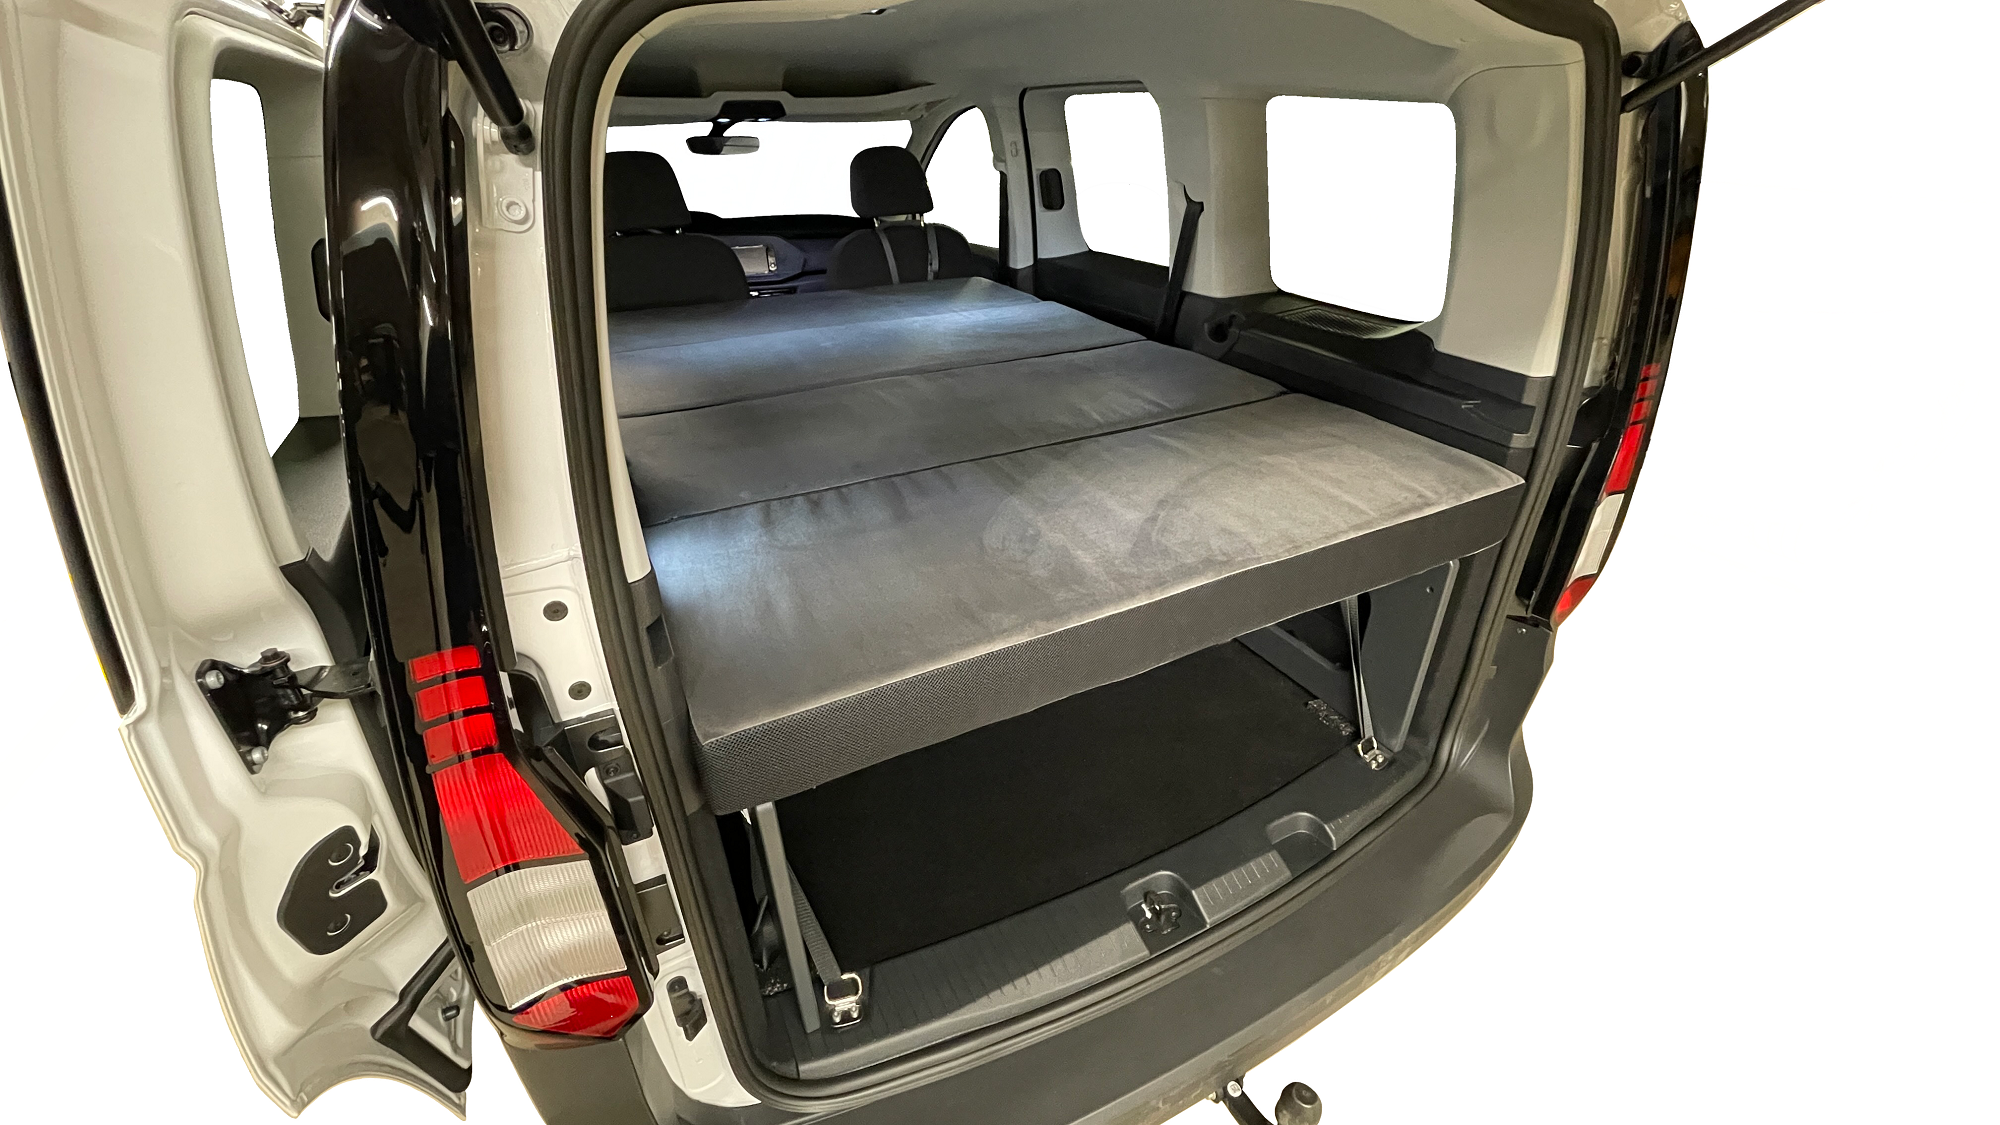 Ausbau- und Schlafsystem inkl. Matratze für VW Caddy und ähnliche